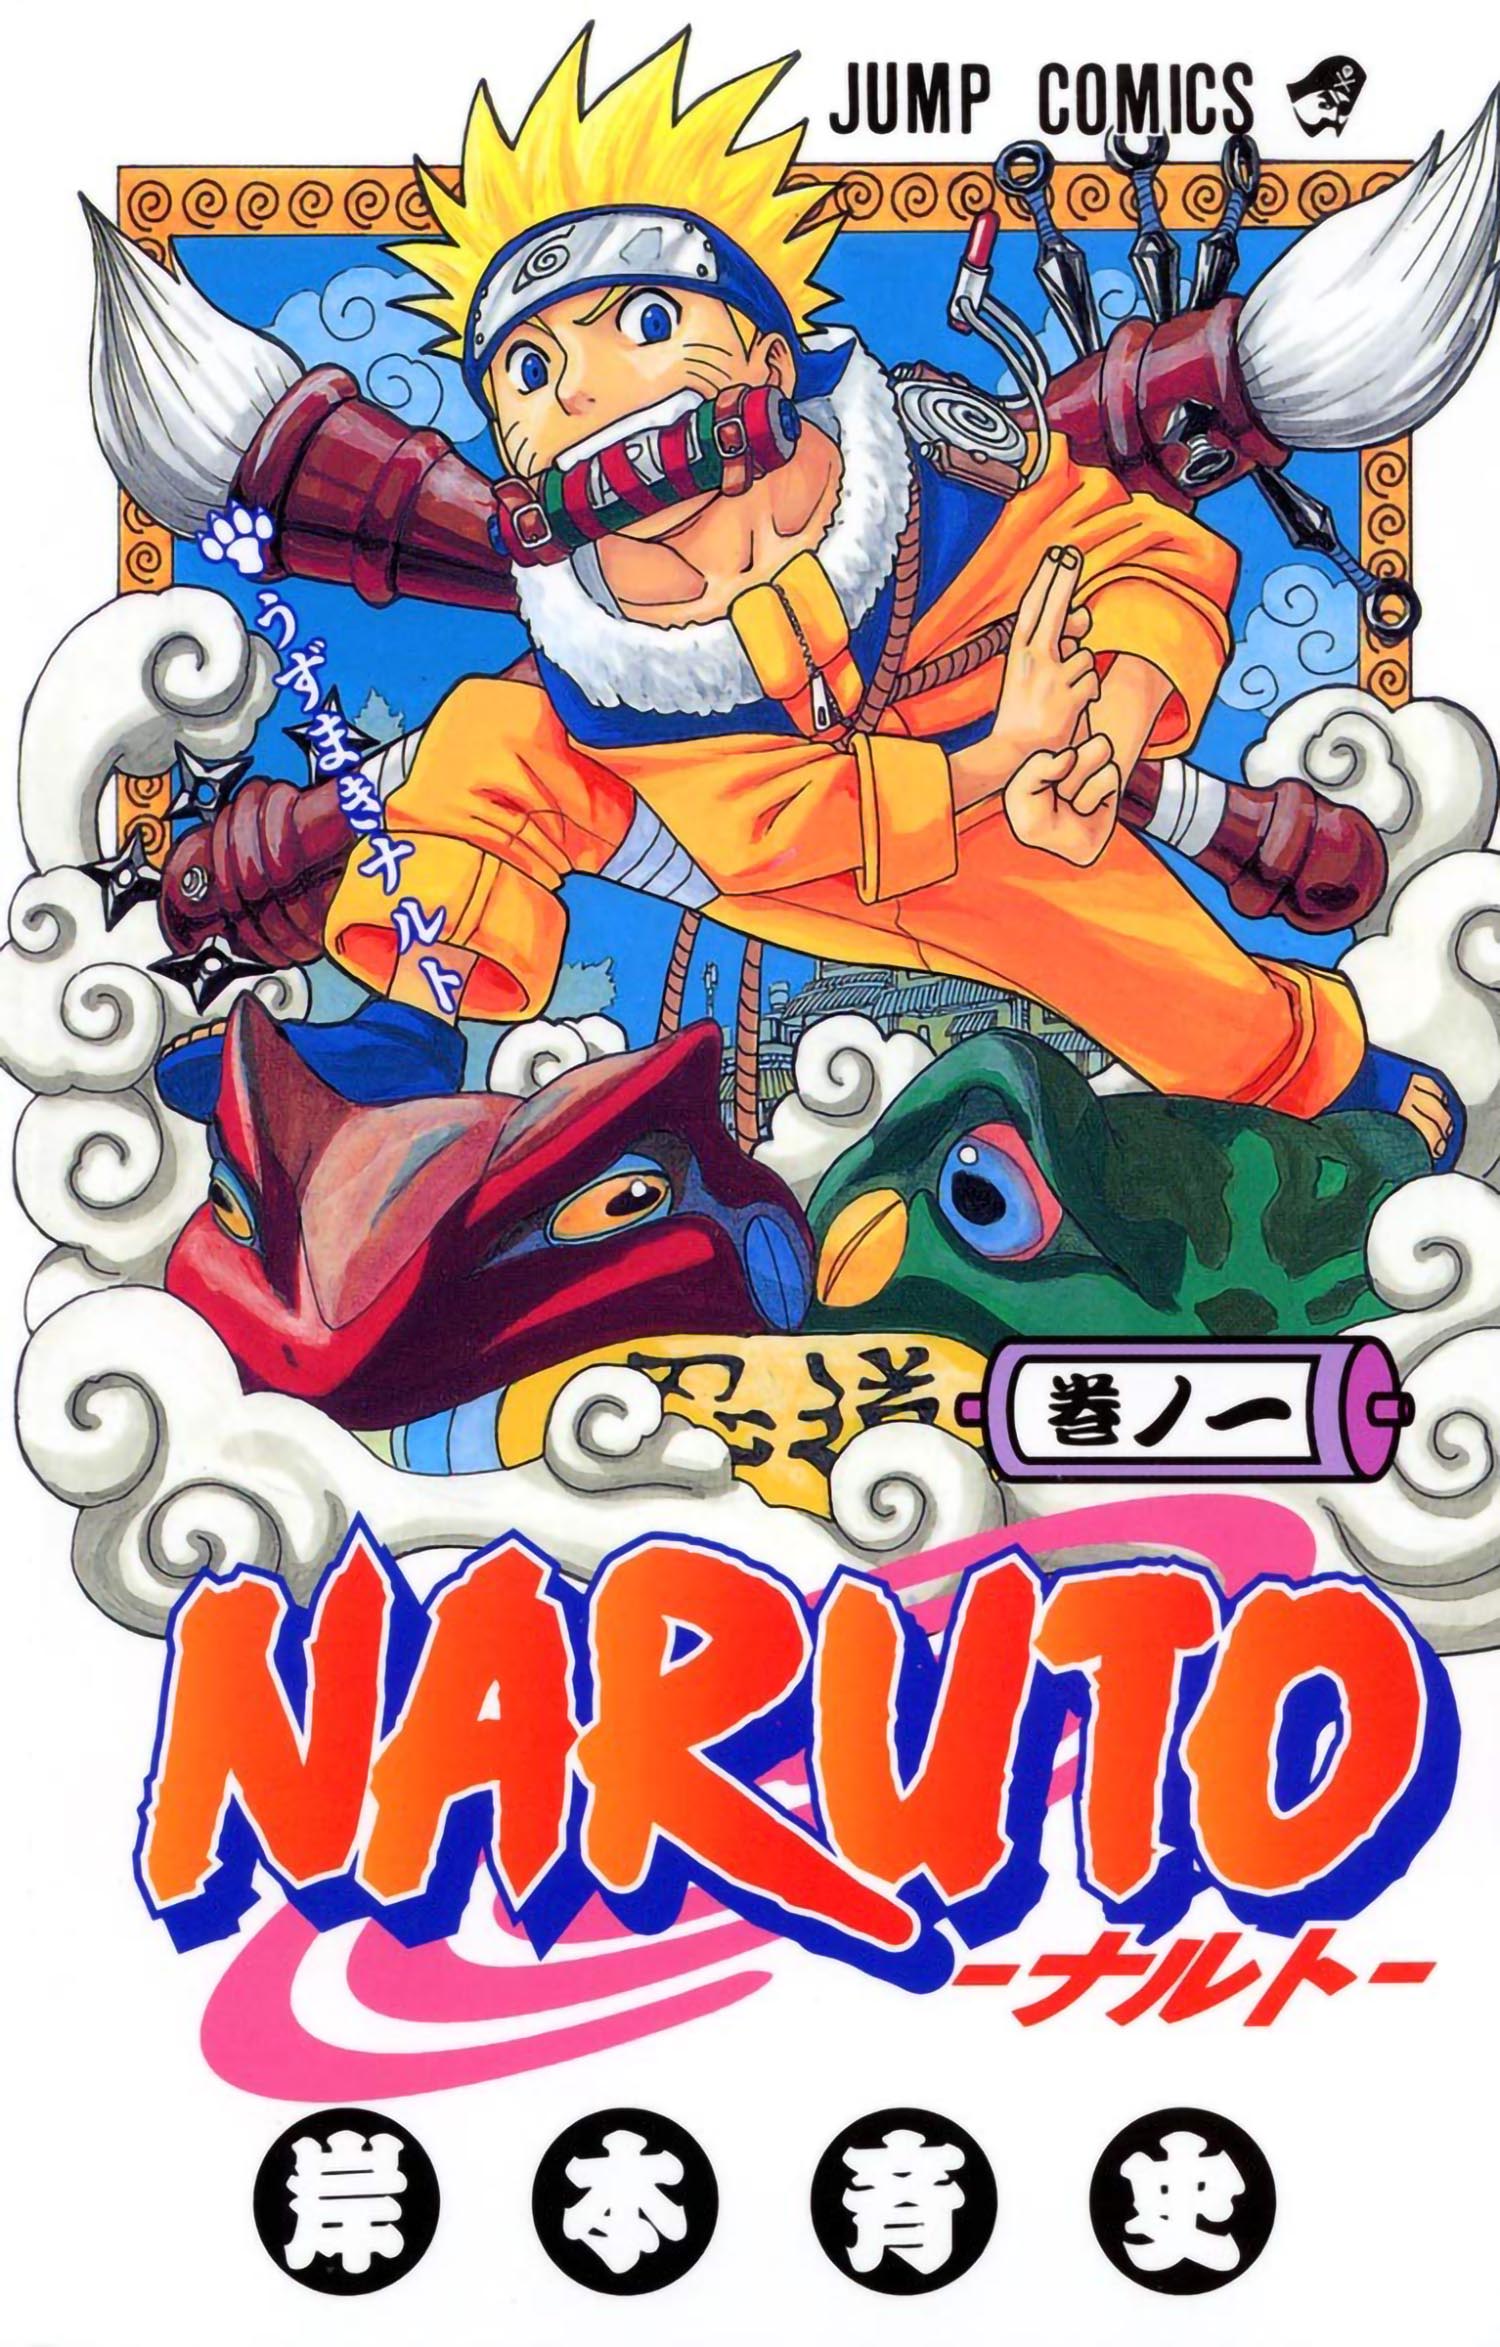 Tome 1 de Naruto en japonais